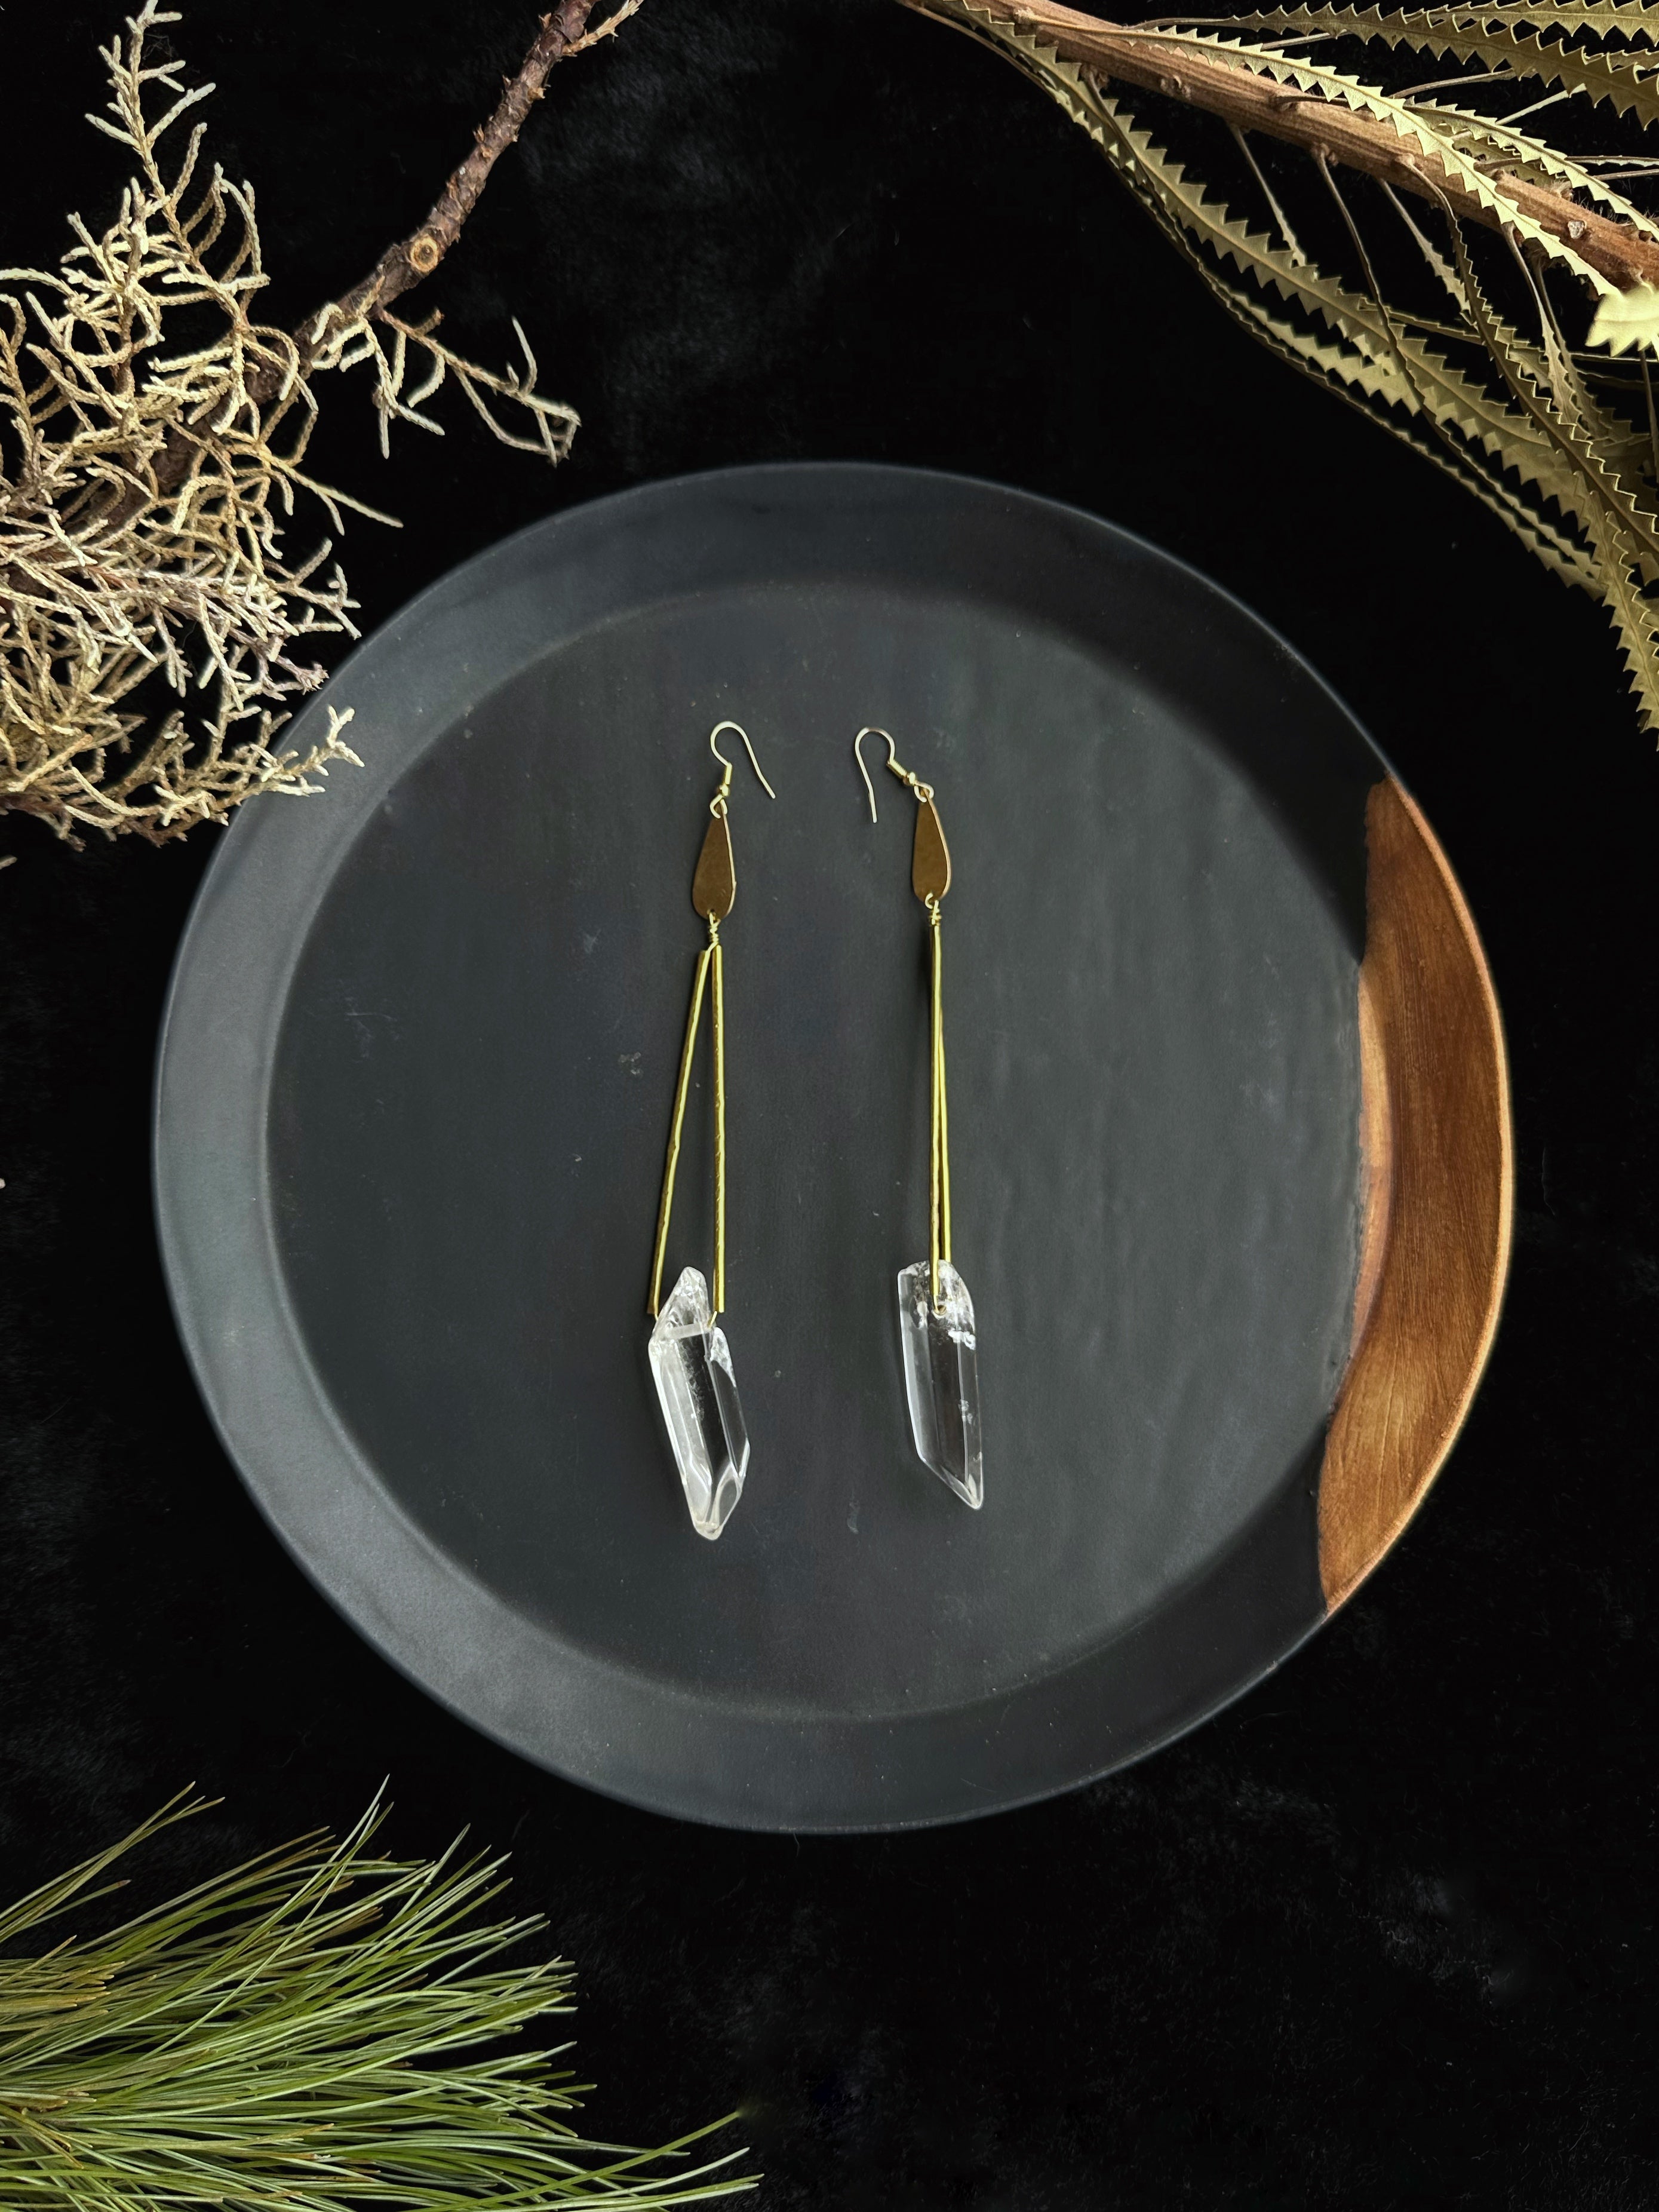 Crystal Quartz Hangers - Brass Earrings by Swell Jewels